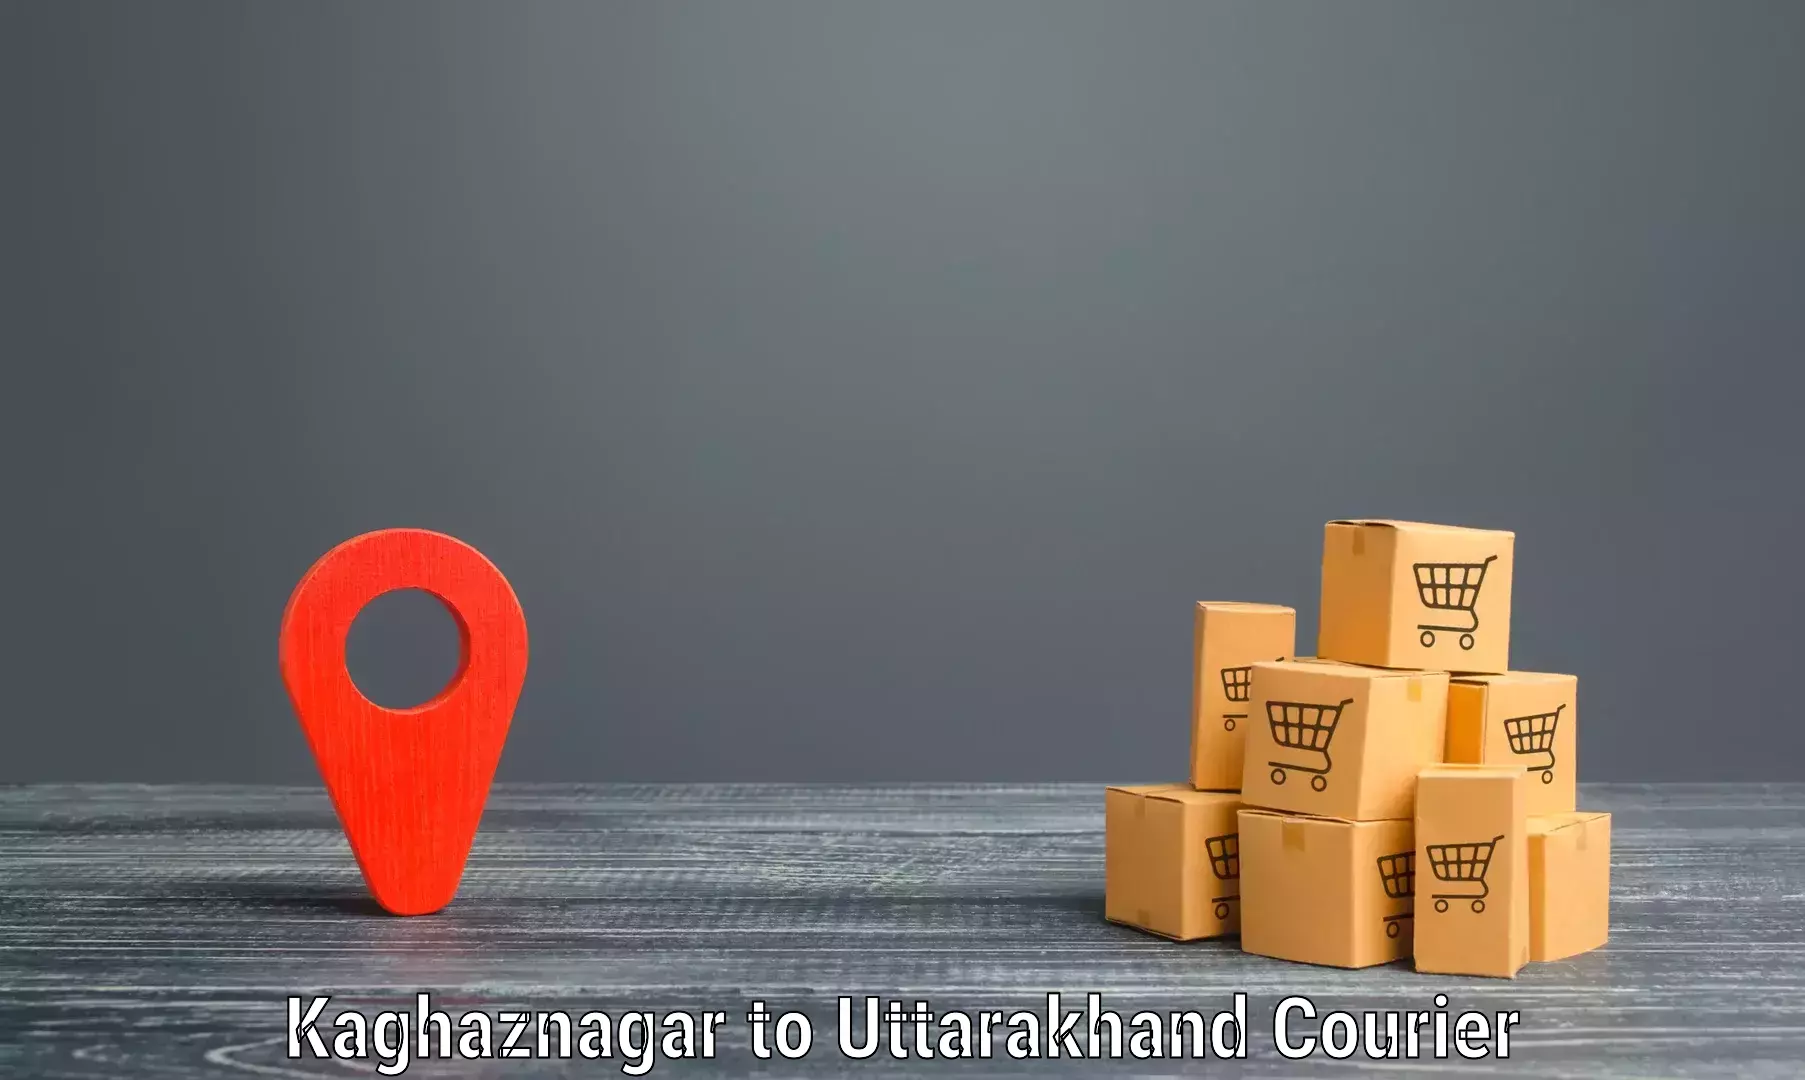 Express logistics Kaghaznagar to Dehradun